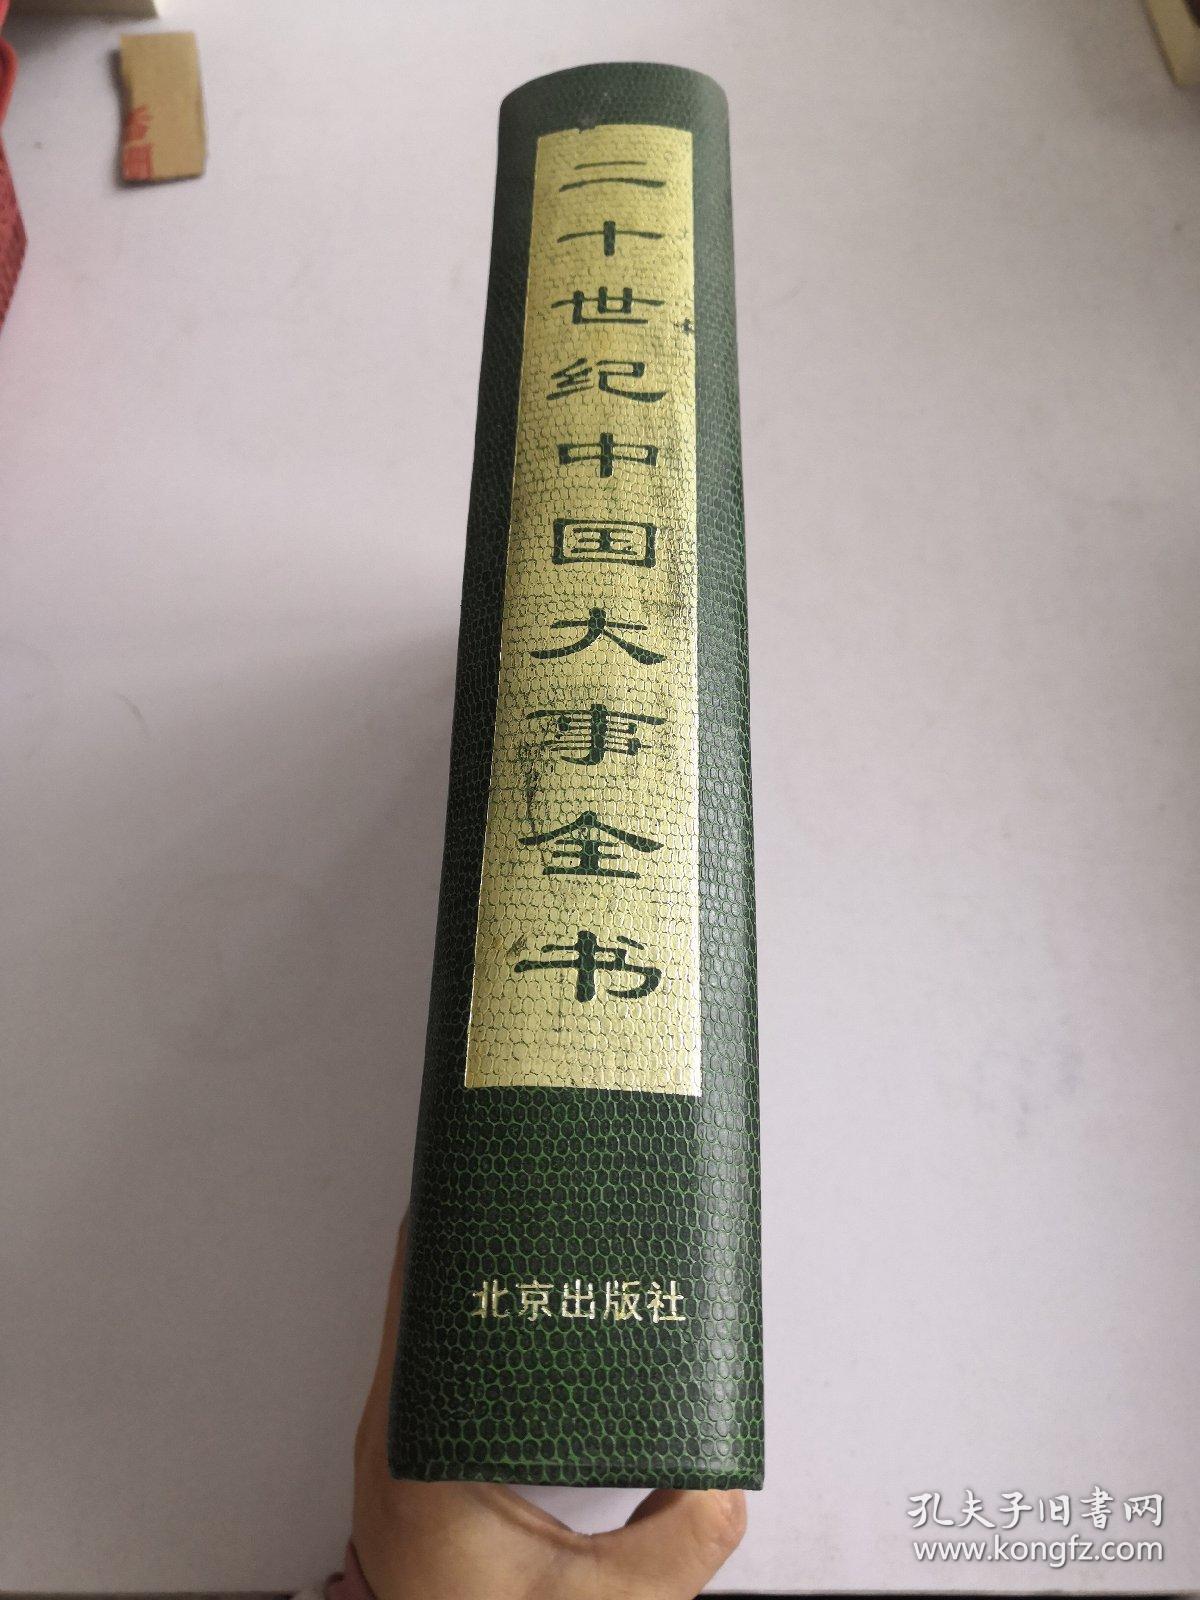 二十世纪中国大事全书